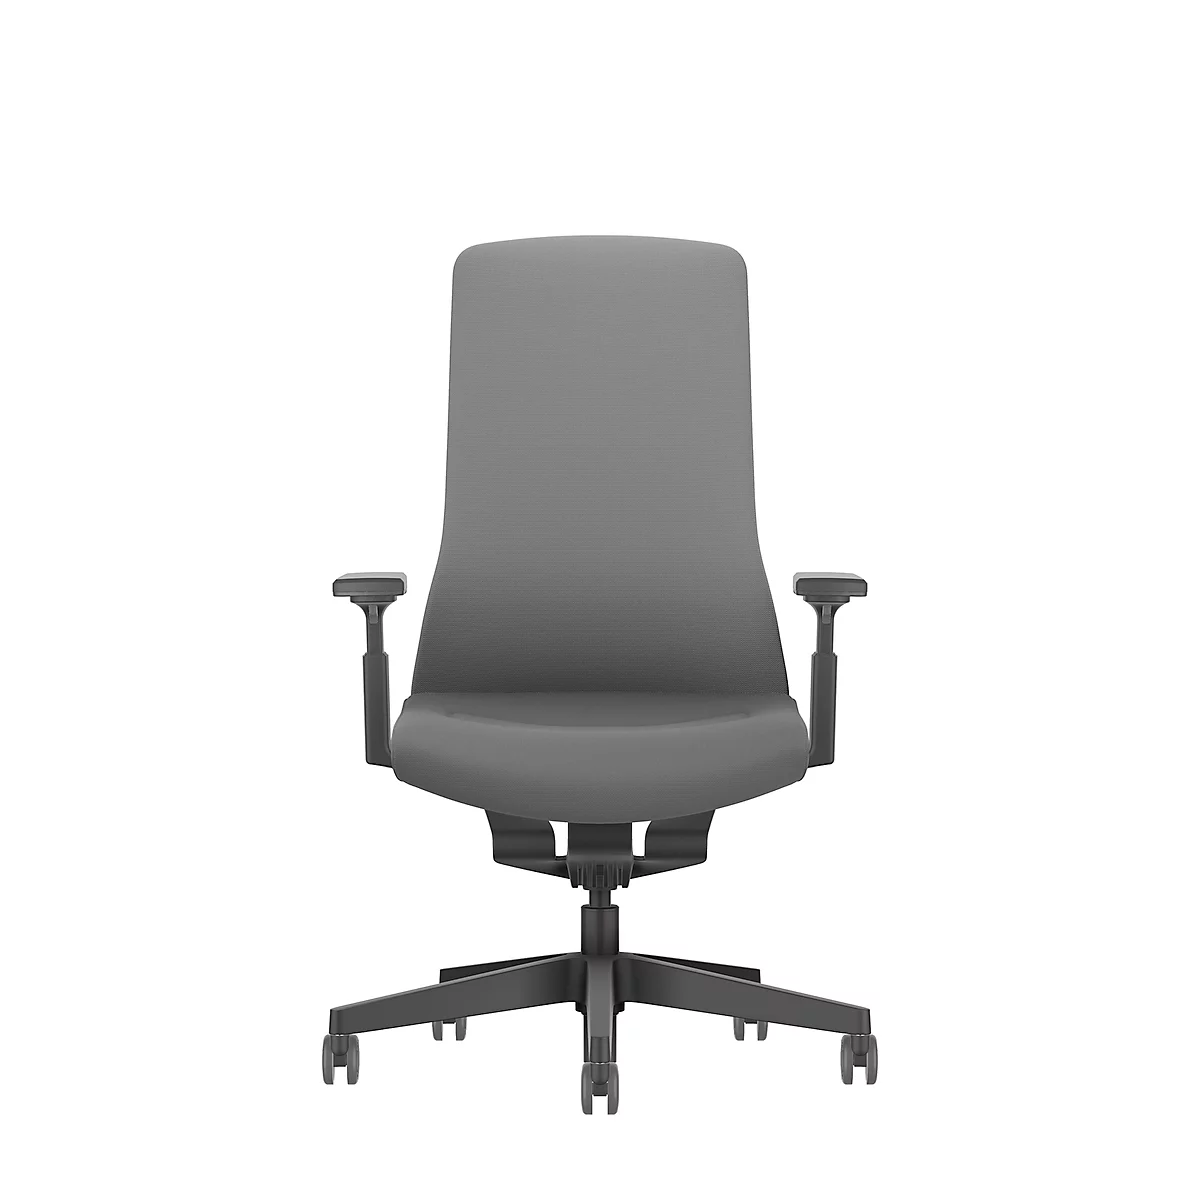 Interstuhl bureaustoel PUREis3, verstelbare armleuningen, 3D auto-synchroonmechanisme, kuipzitting, gestoffeerde rug ijzergrijs/zwart